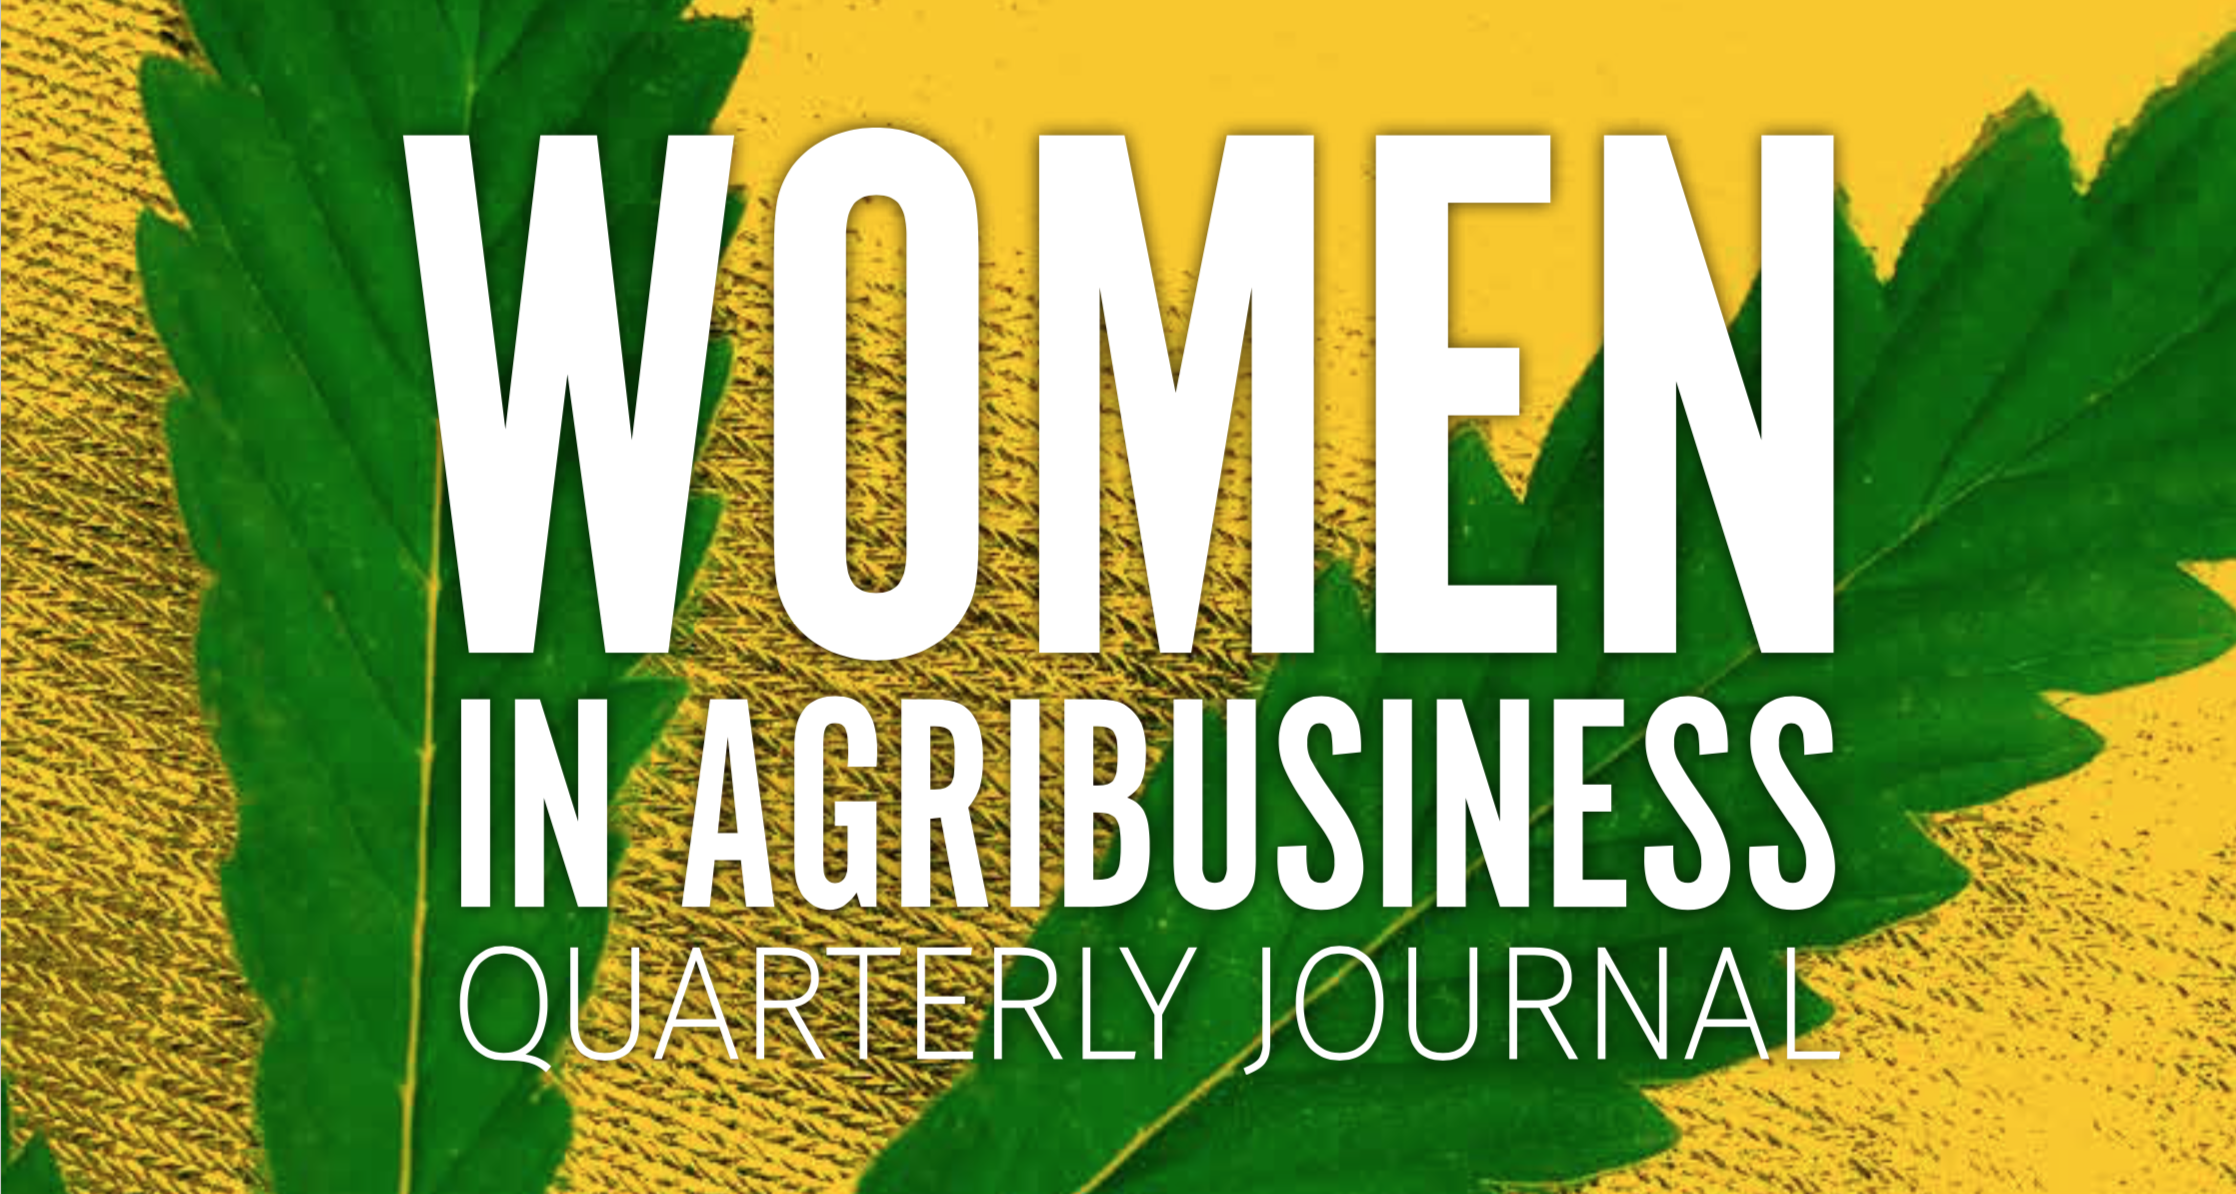 Joelle Faulkner featured in Women in Ag’s Quarterly Journal